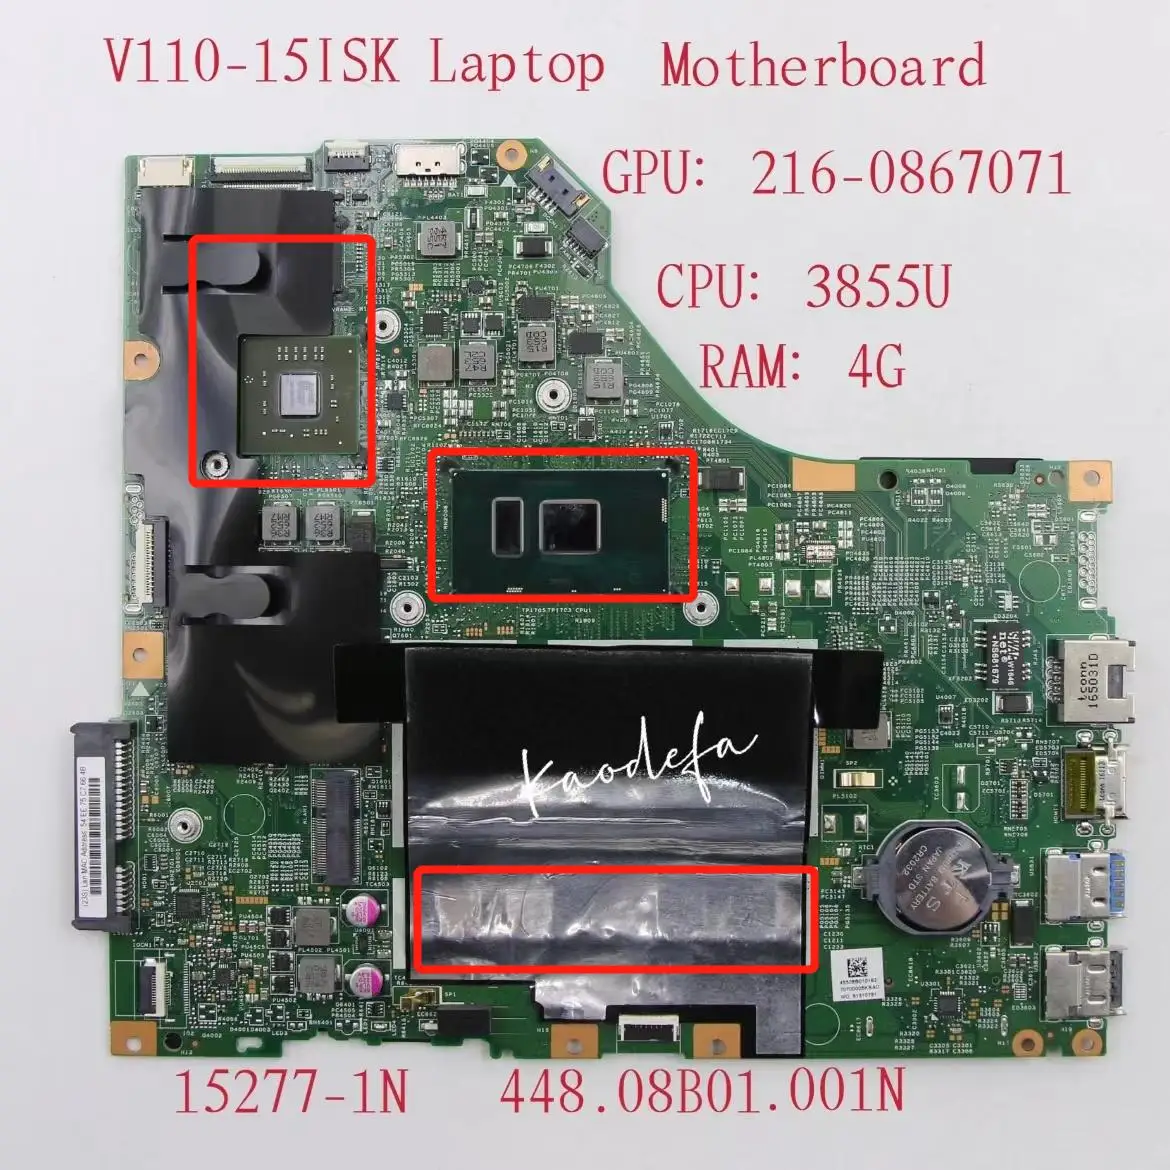 

15277-1N for Lenovo ThinkPad V110-15ISK Laptop Motherboard CPU:3855U GPU:216-0867071 RAM:4G DDR4 FRU:5B20L78369